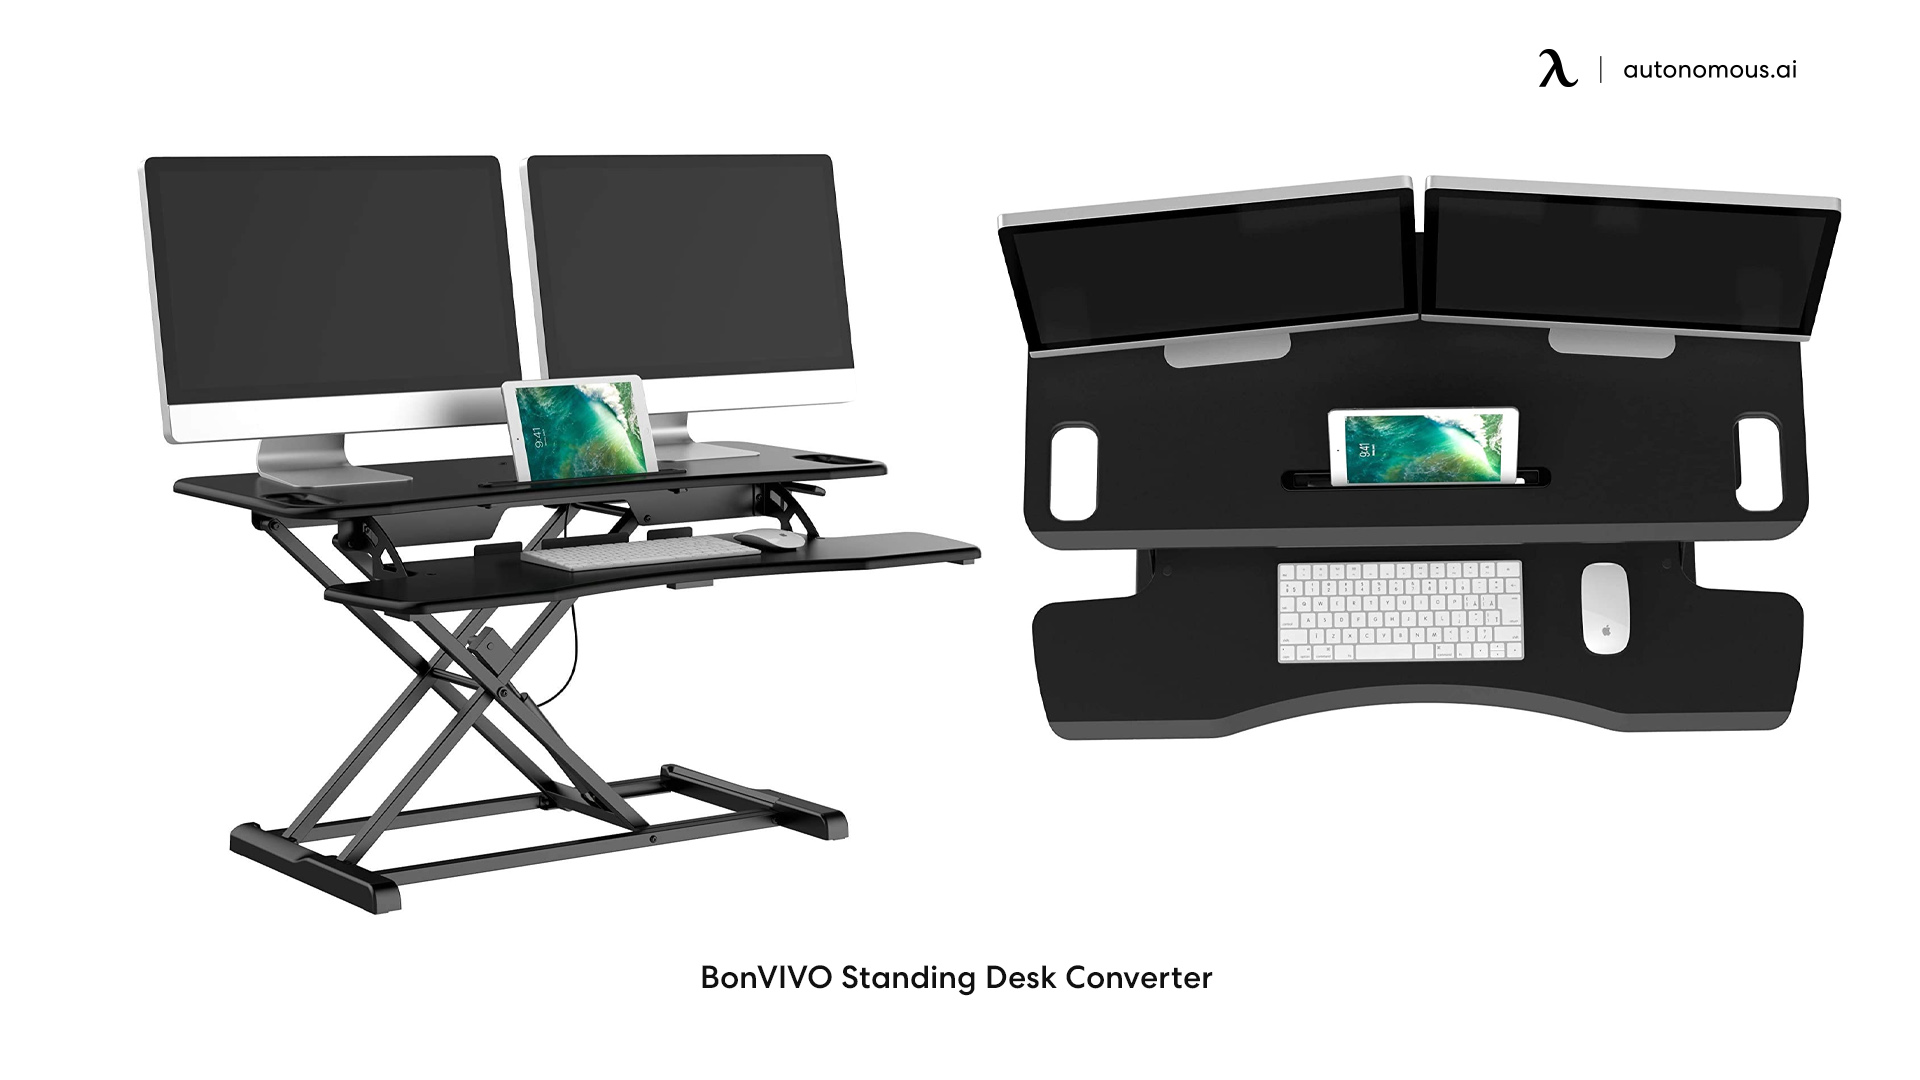 BonVIVO Standing Desk Converter